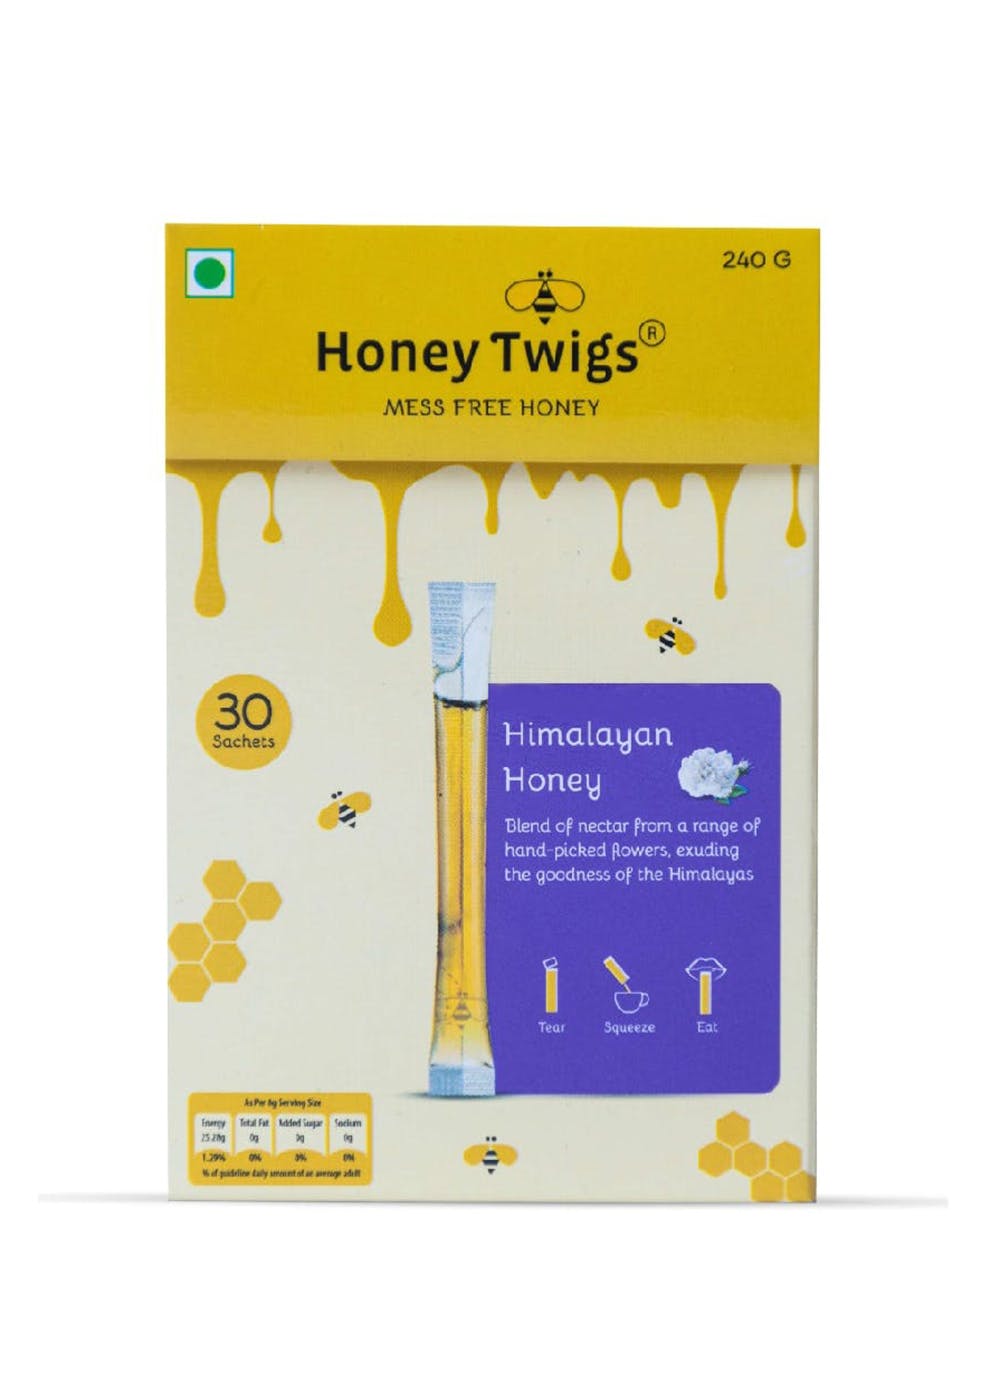 Multi-flora Honey